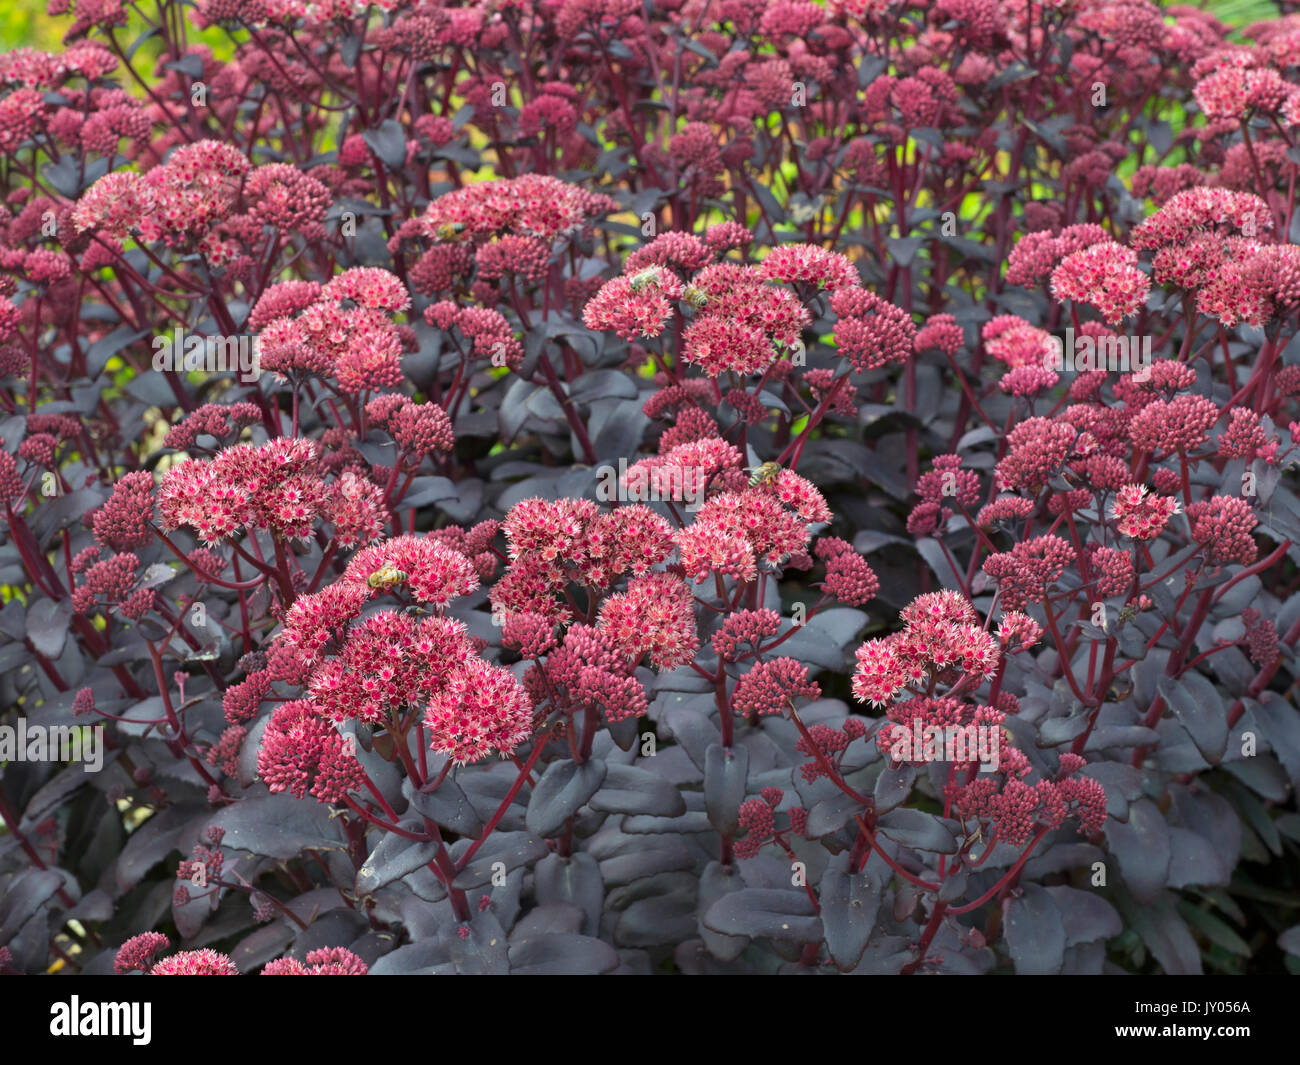 Sedum telephium 'Purple Emperor' (Ice plant) Stock Photo